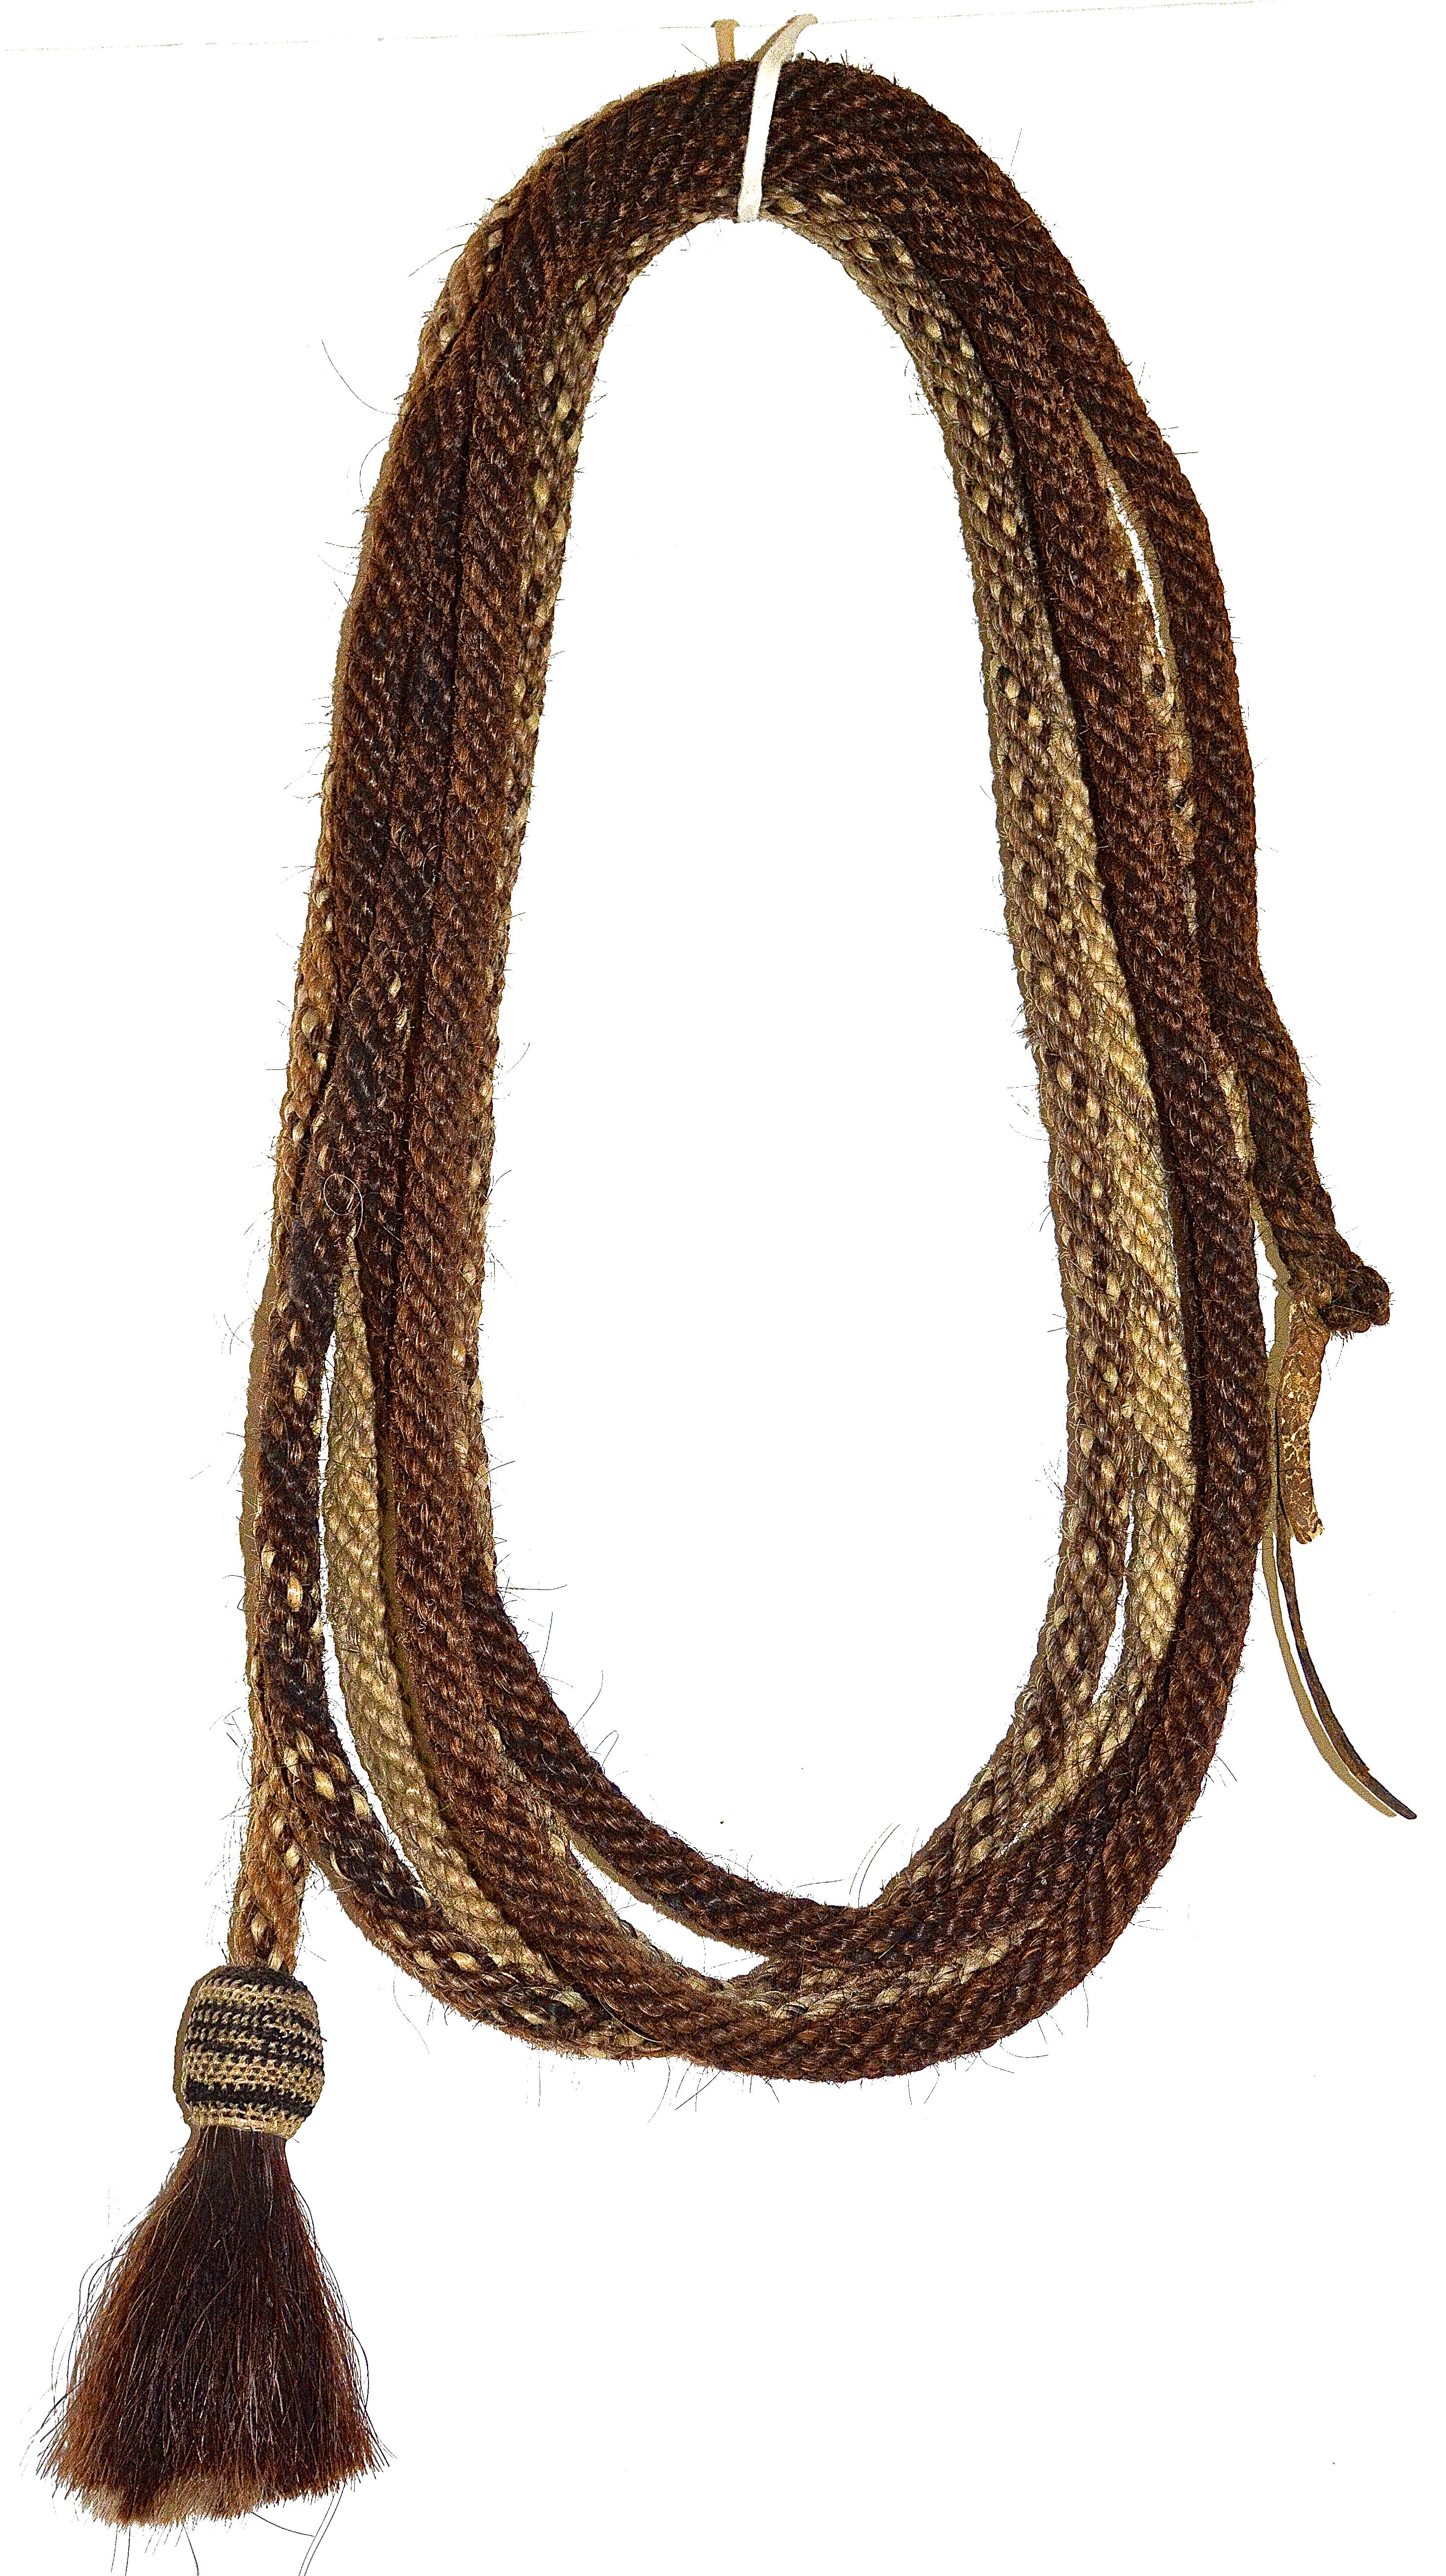 Corde en crin de cheval tressée Navajo
1890s
Crin de cheval tressé, cuir
20' de long

Une rare corde de crin tressée Navajo de la fin du 19ème siècle, 20 pieds de longueur totale, apparaissant en très bon état d'origine.